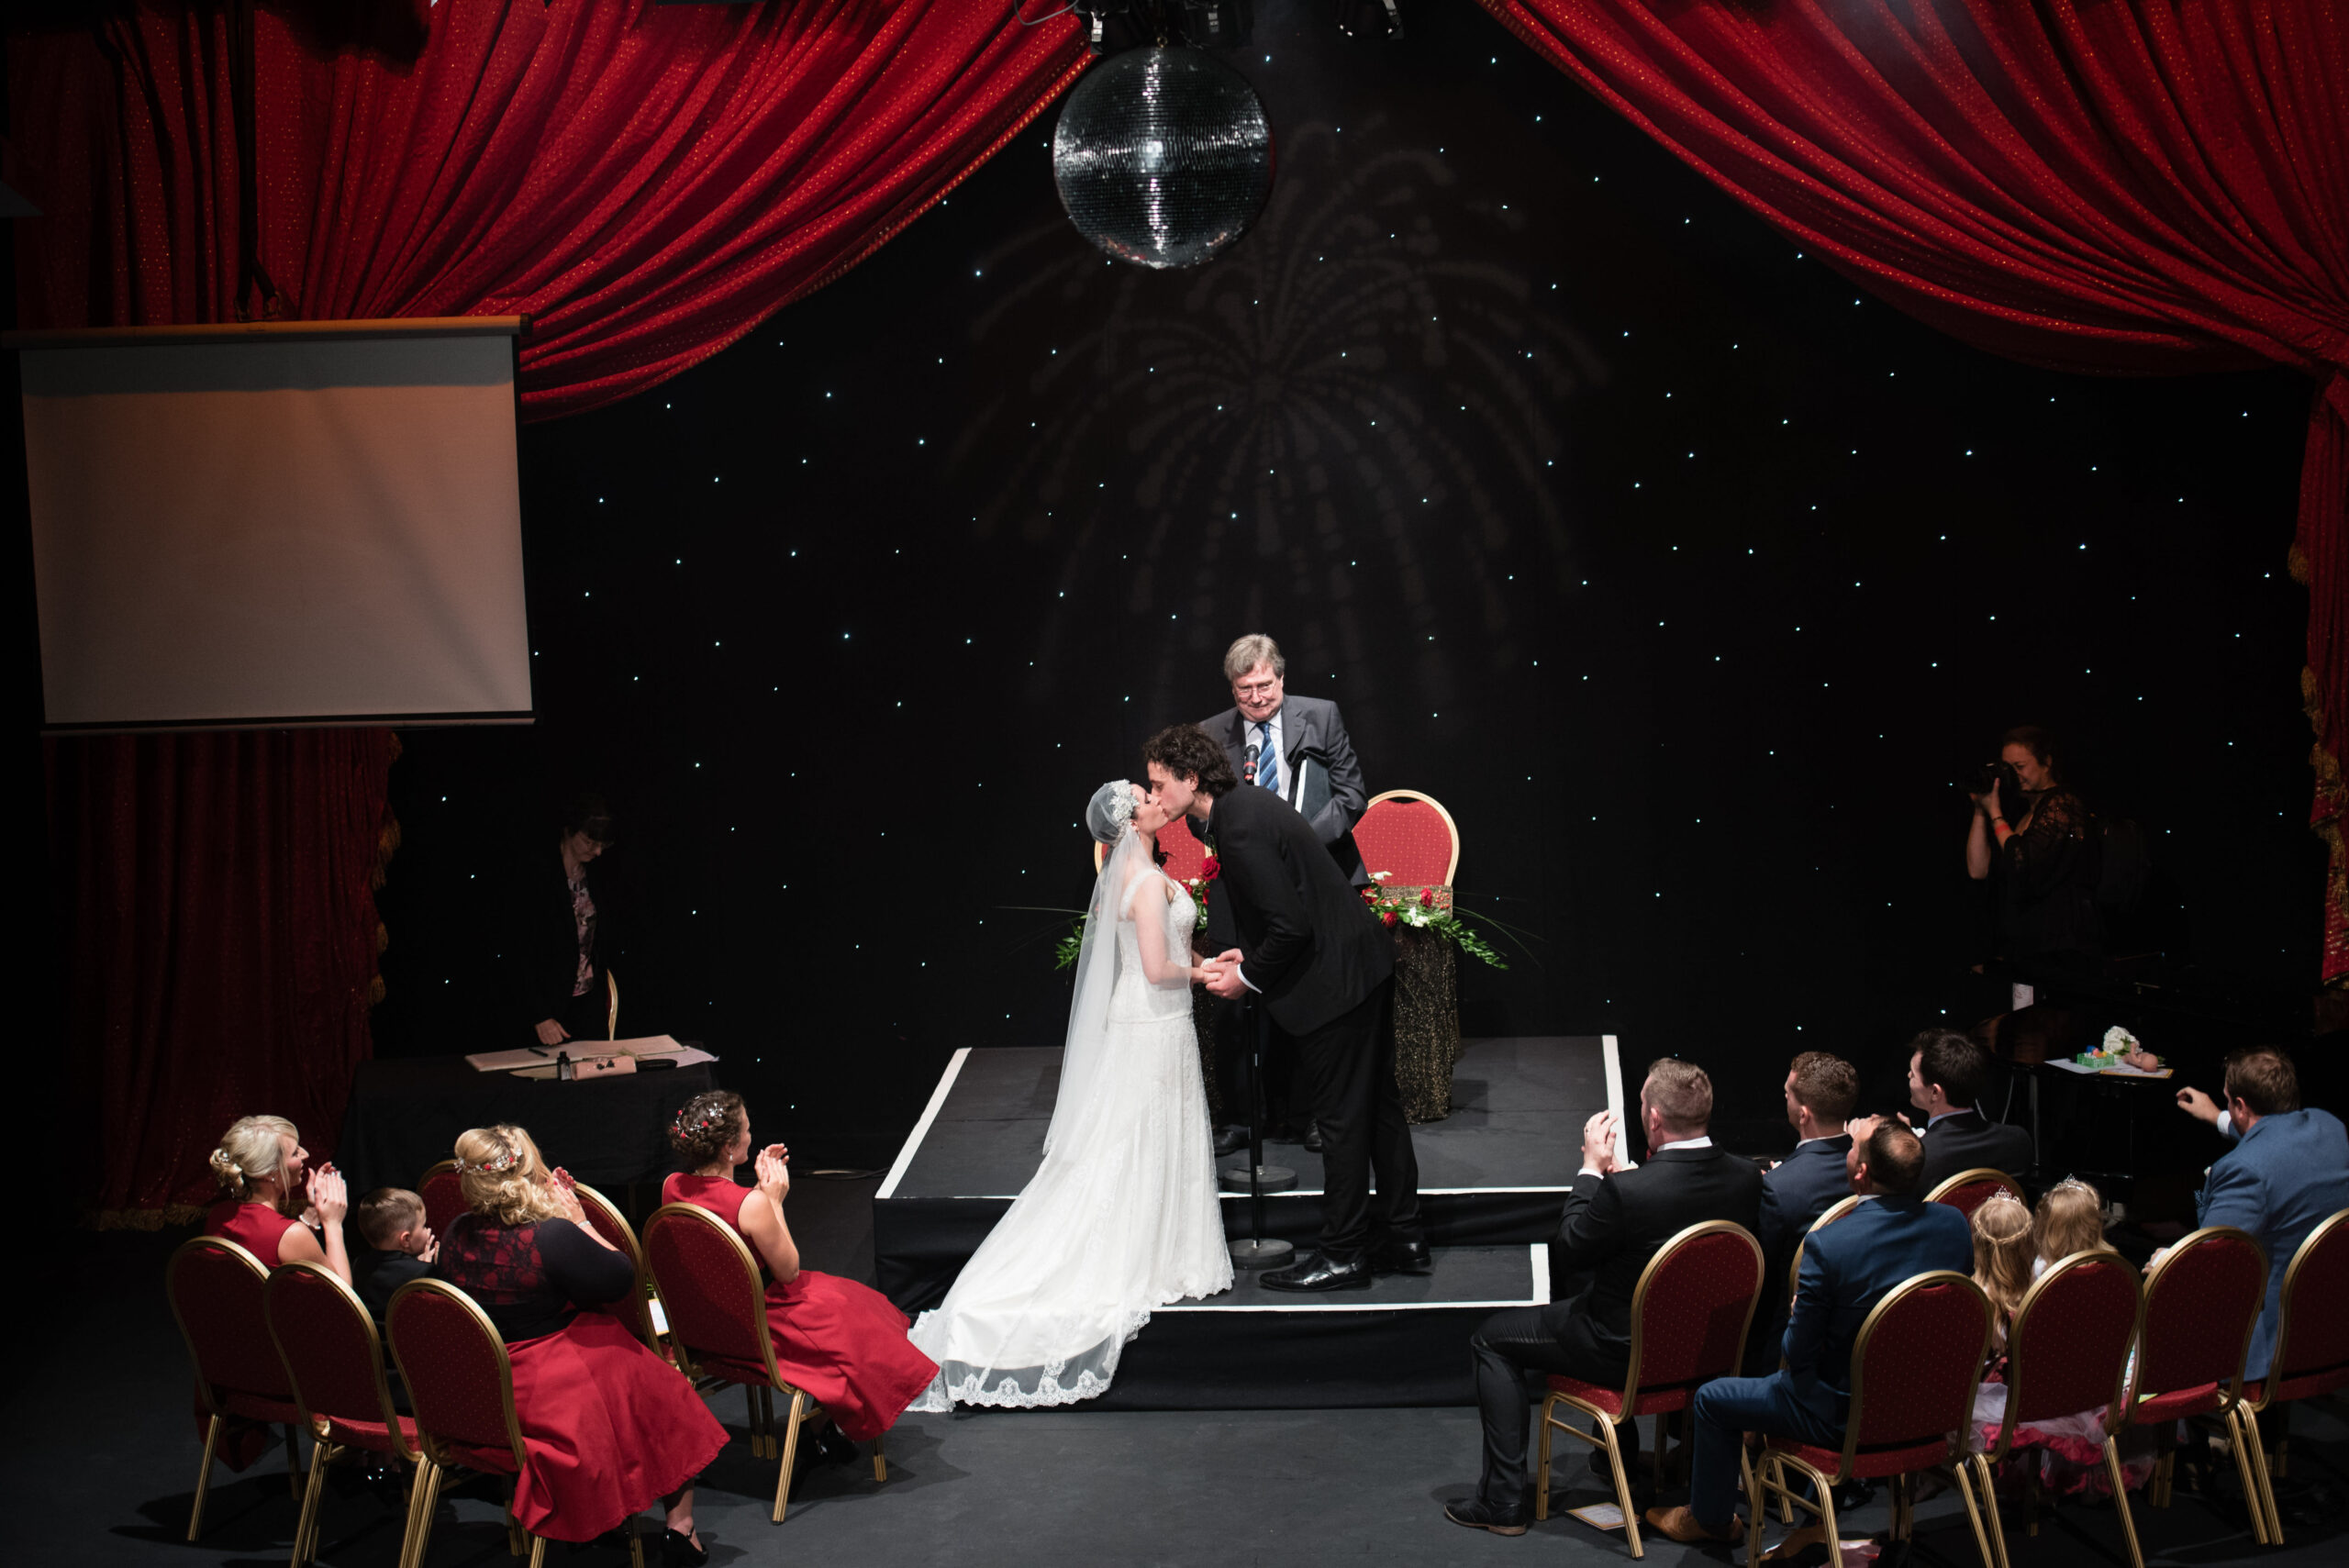 Bridebook.co.uk bride and groom kiss on stage